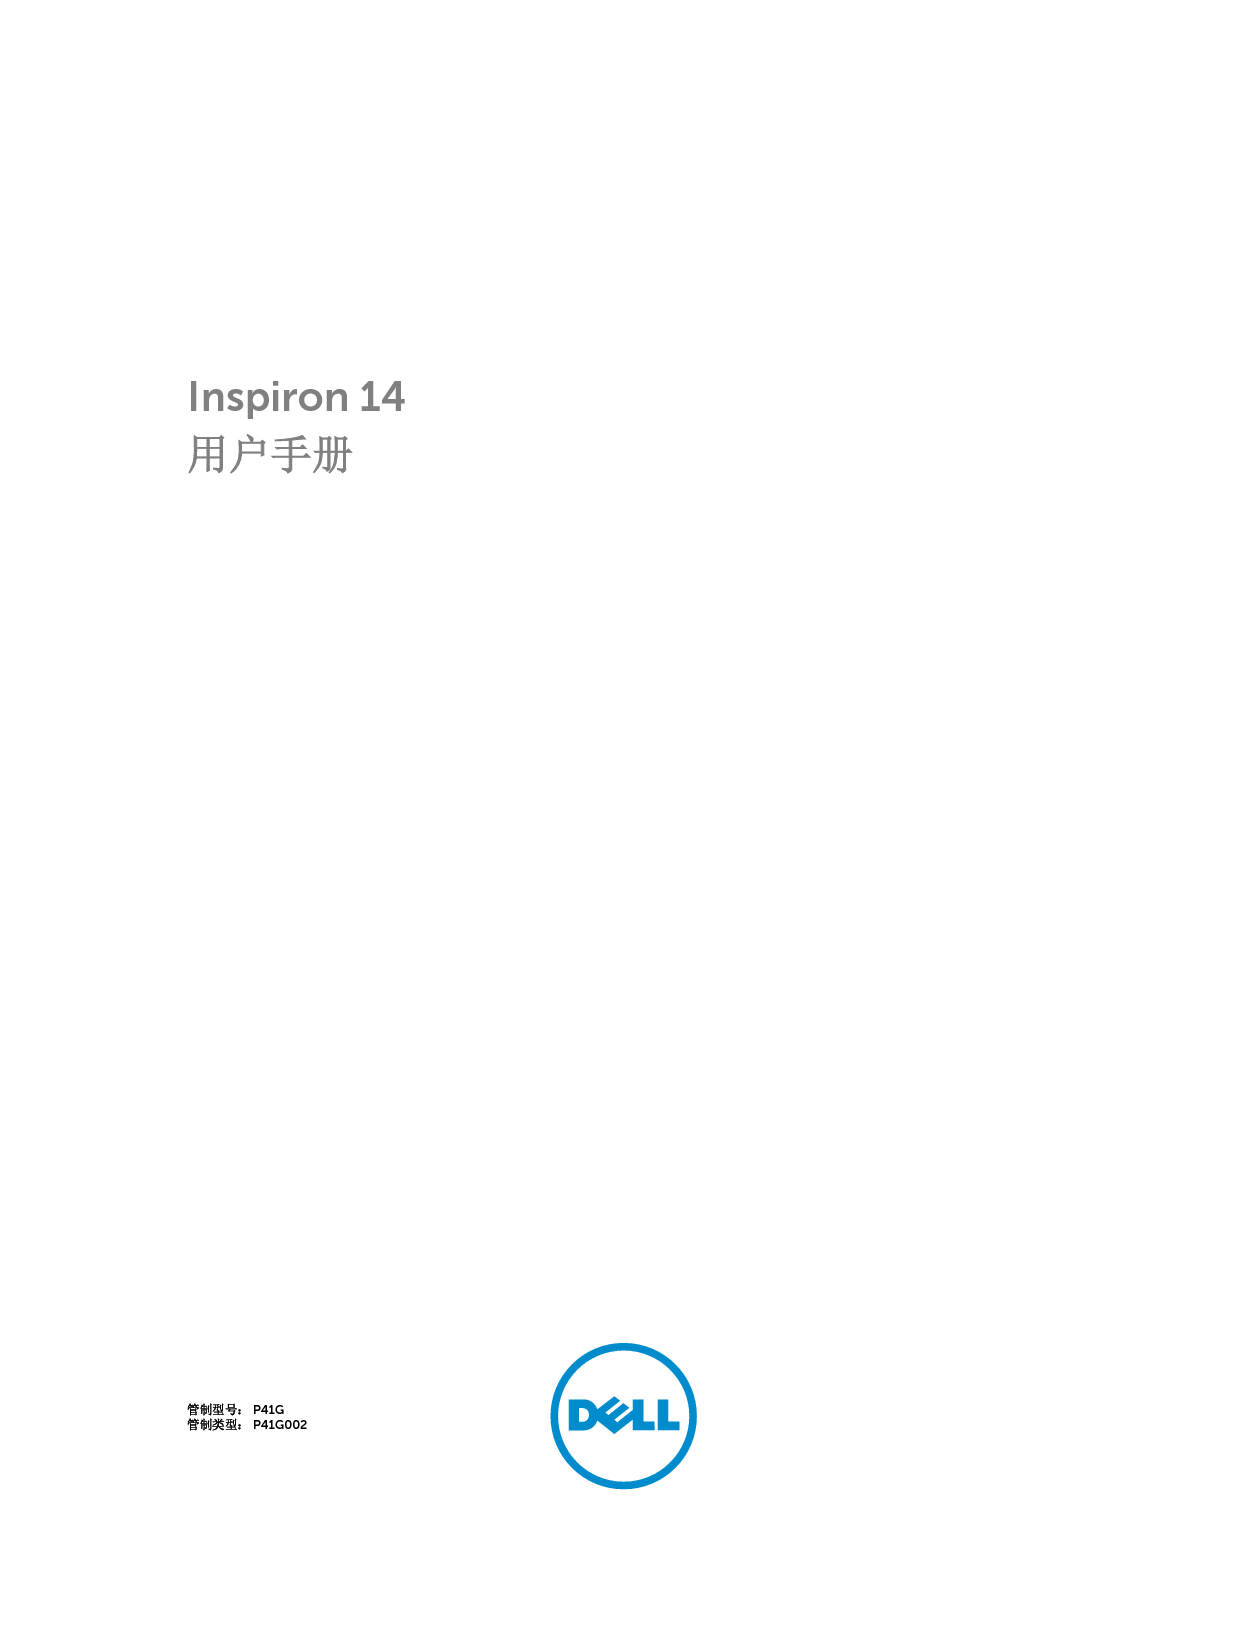 戴尔 Dell Inspiron 5439 用户手册 封面